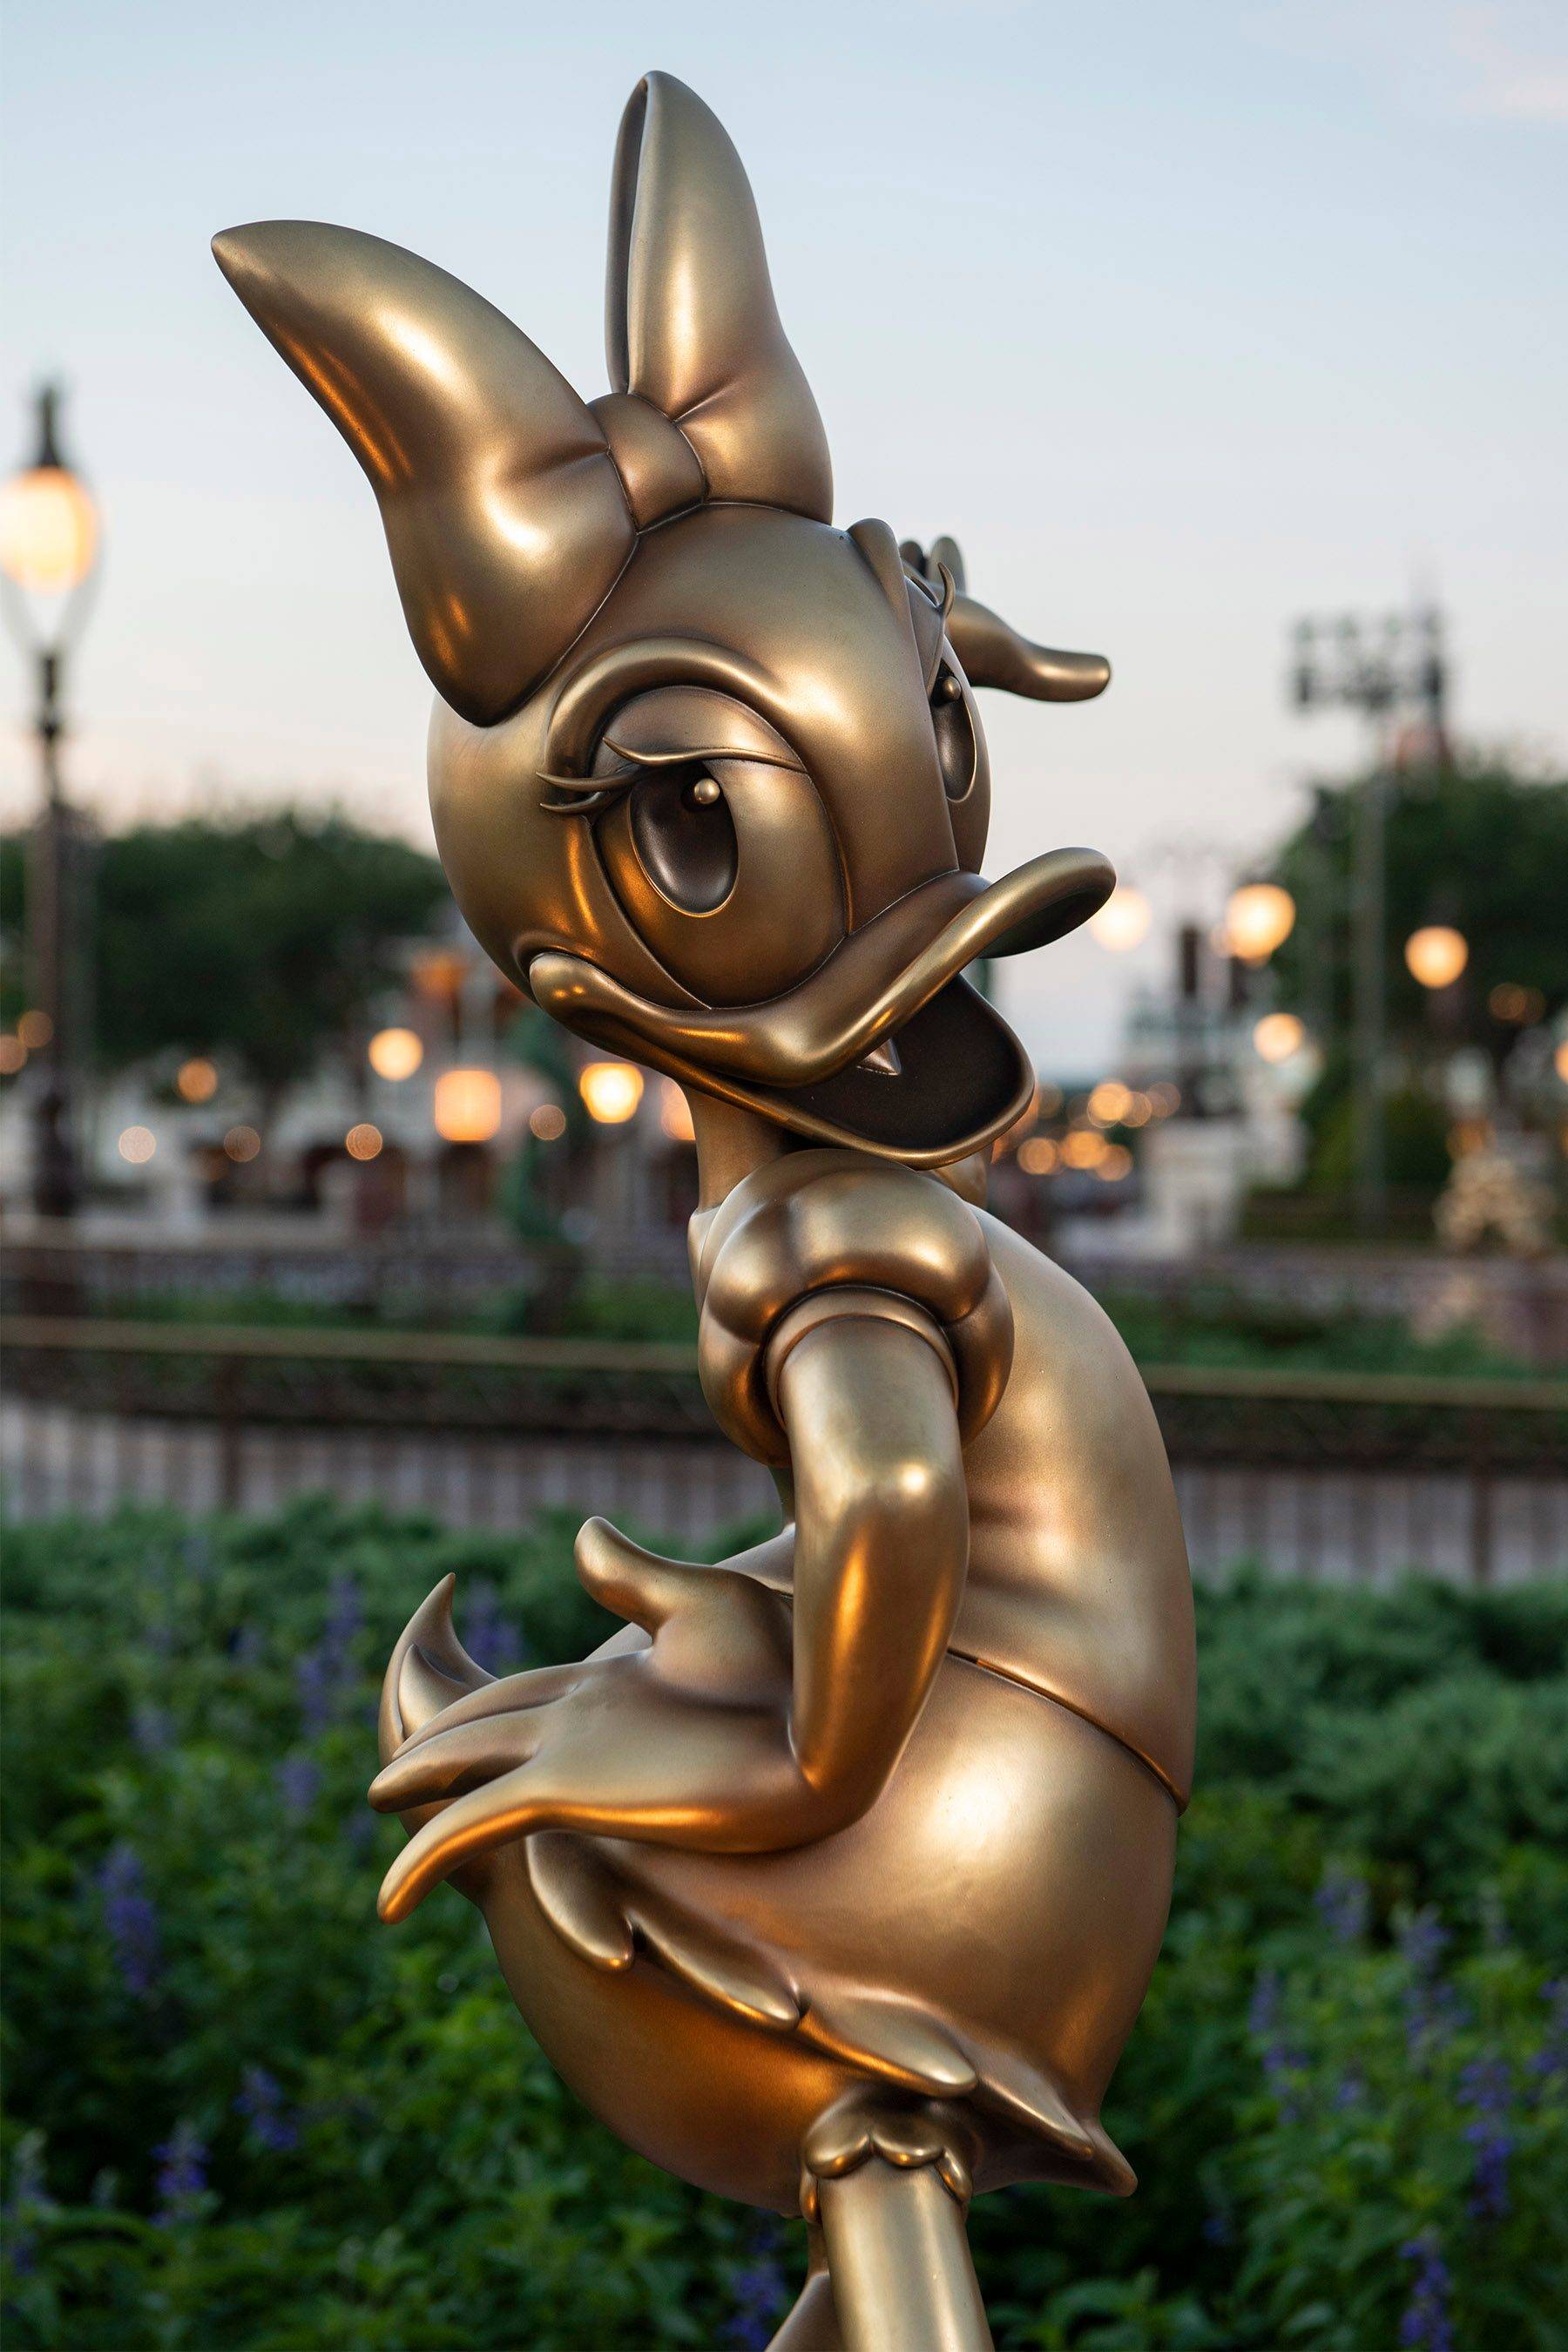 First Disney Fab 50 statues at Magic Kingdom